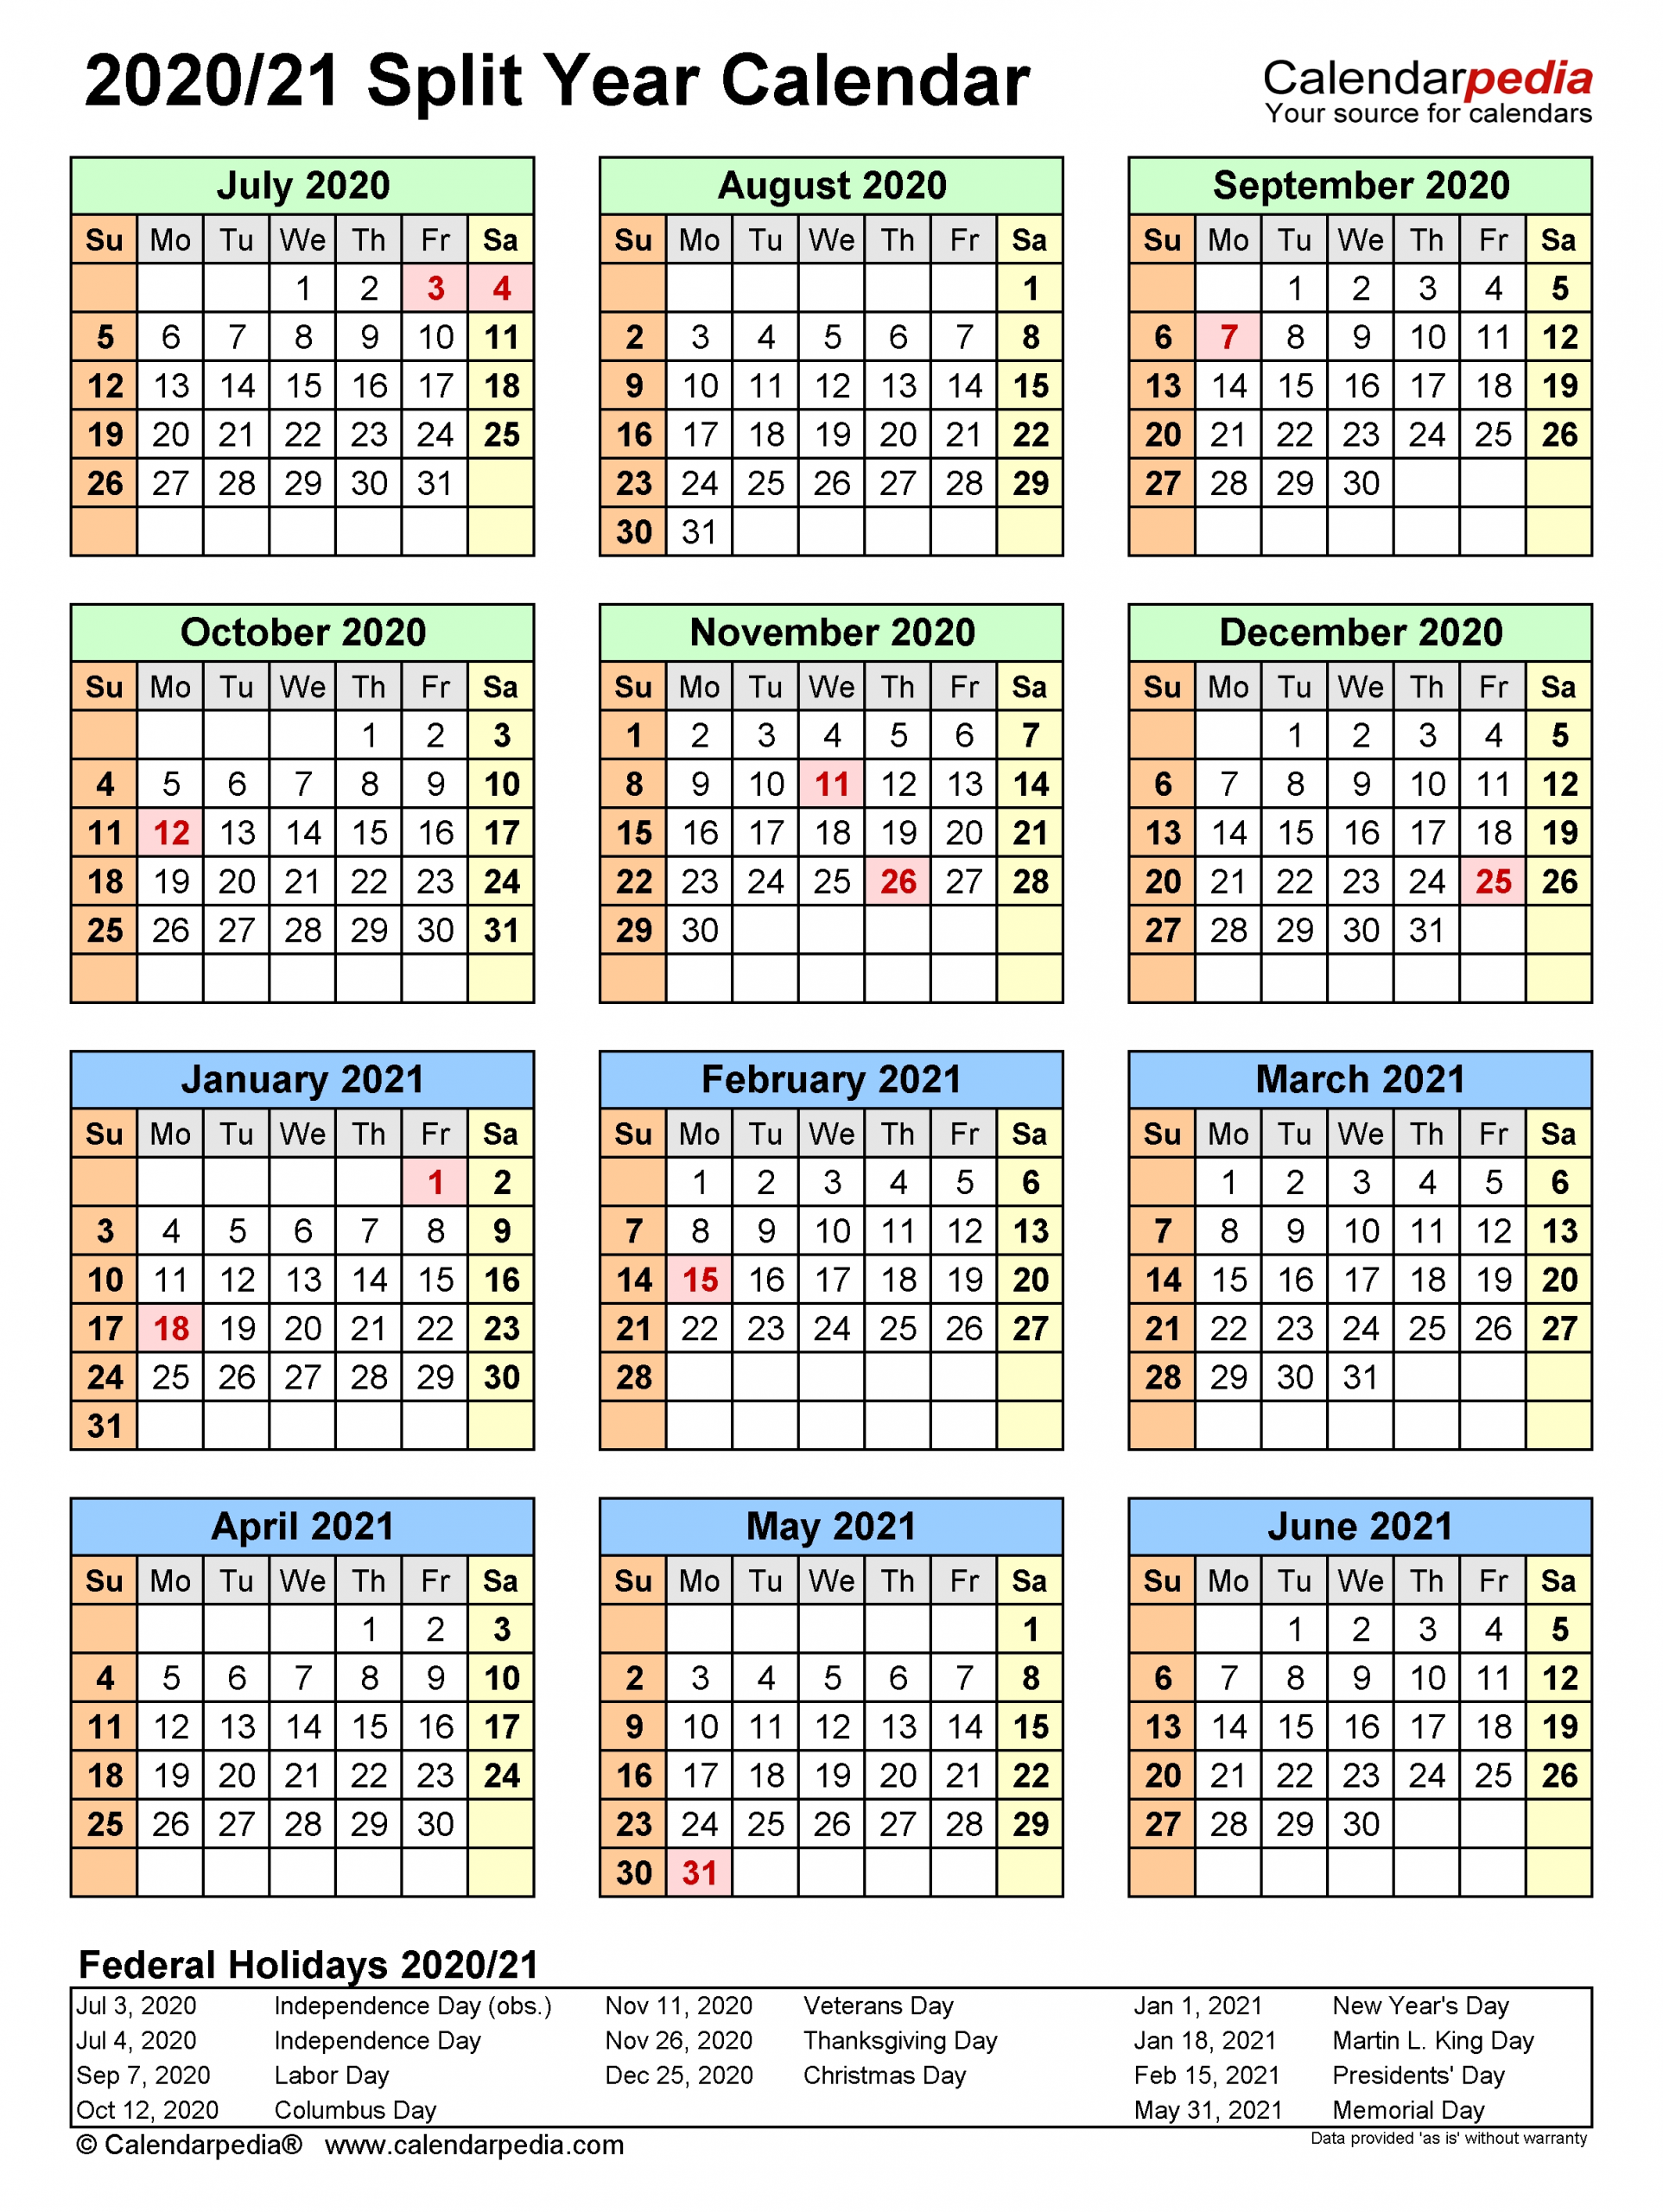 Get Calendar August Through December 2021